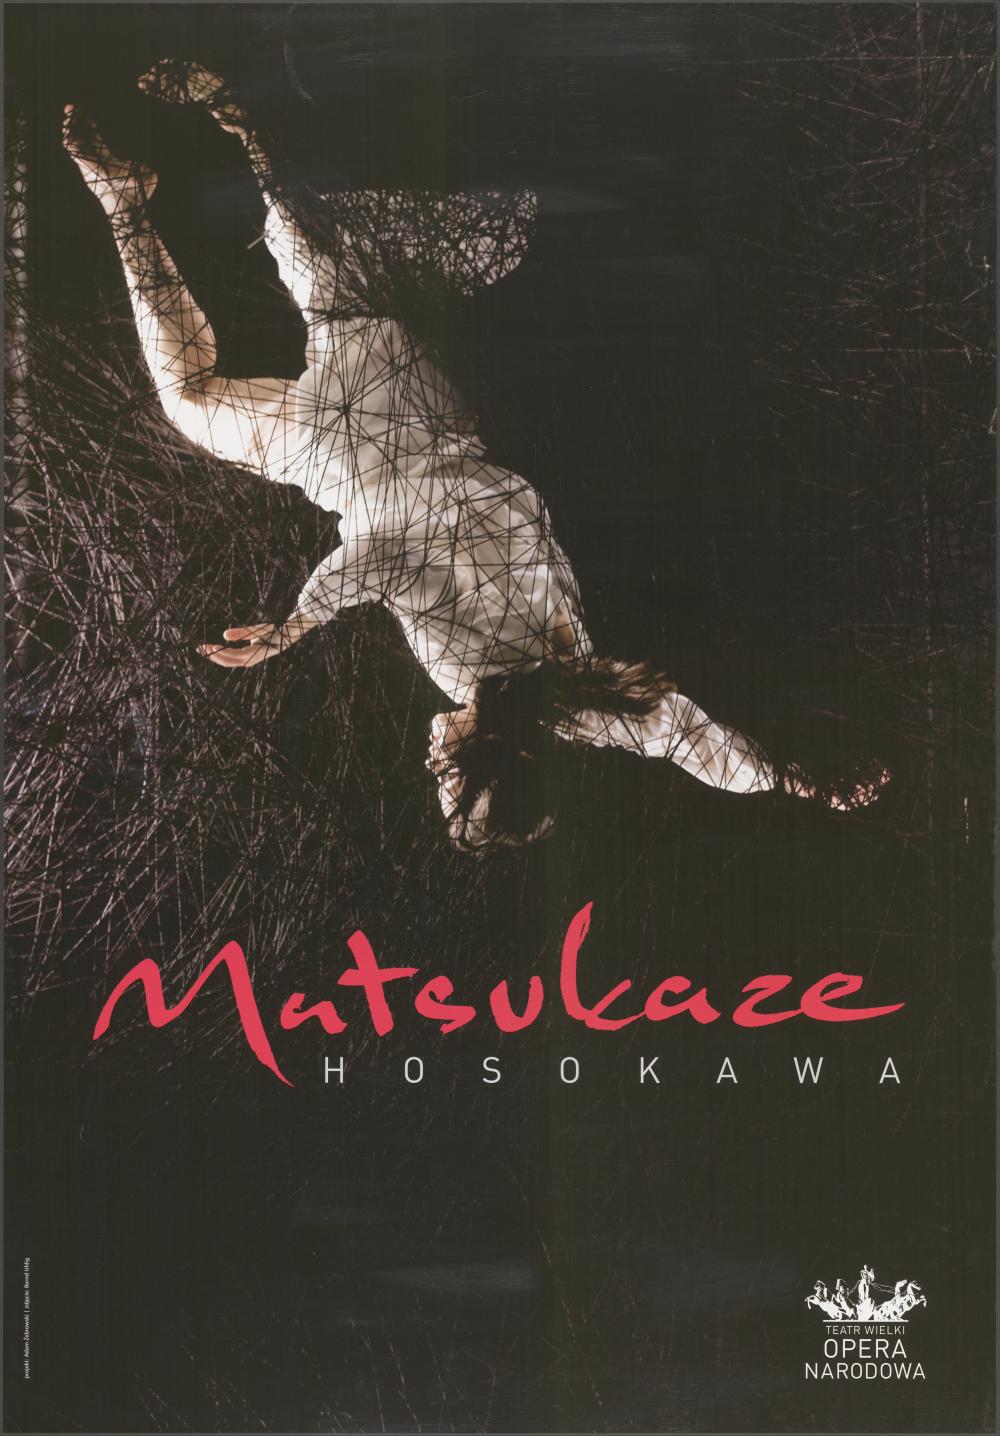 Plakat „Matsukaze” Toshio Hosokawa, Sasha Waltz 31-05-2011